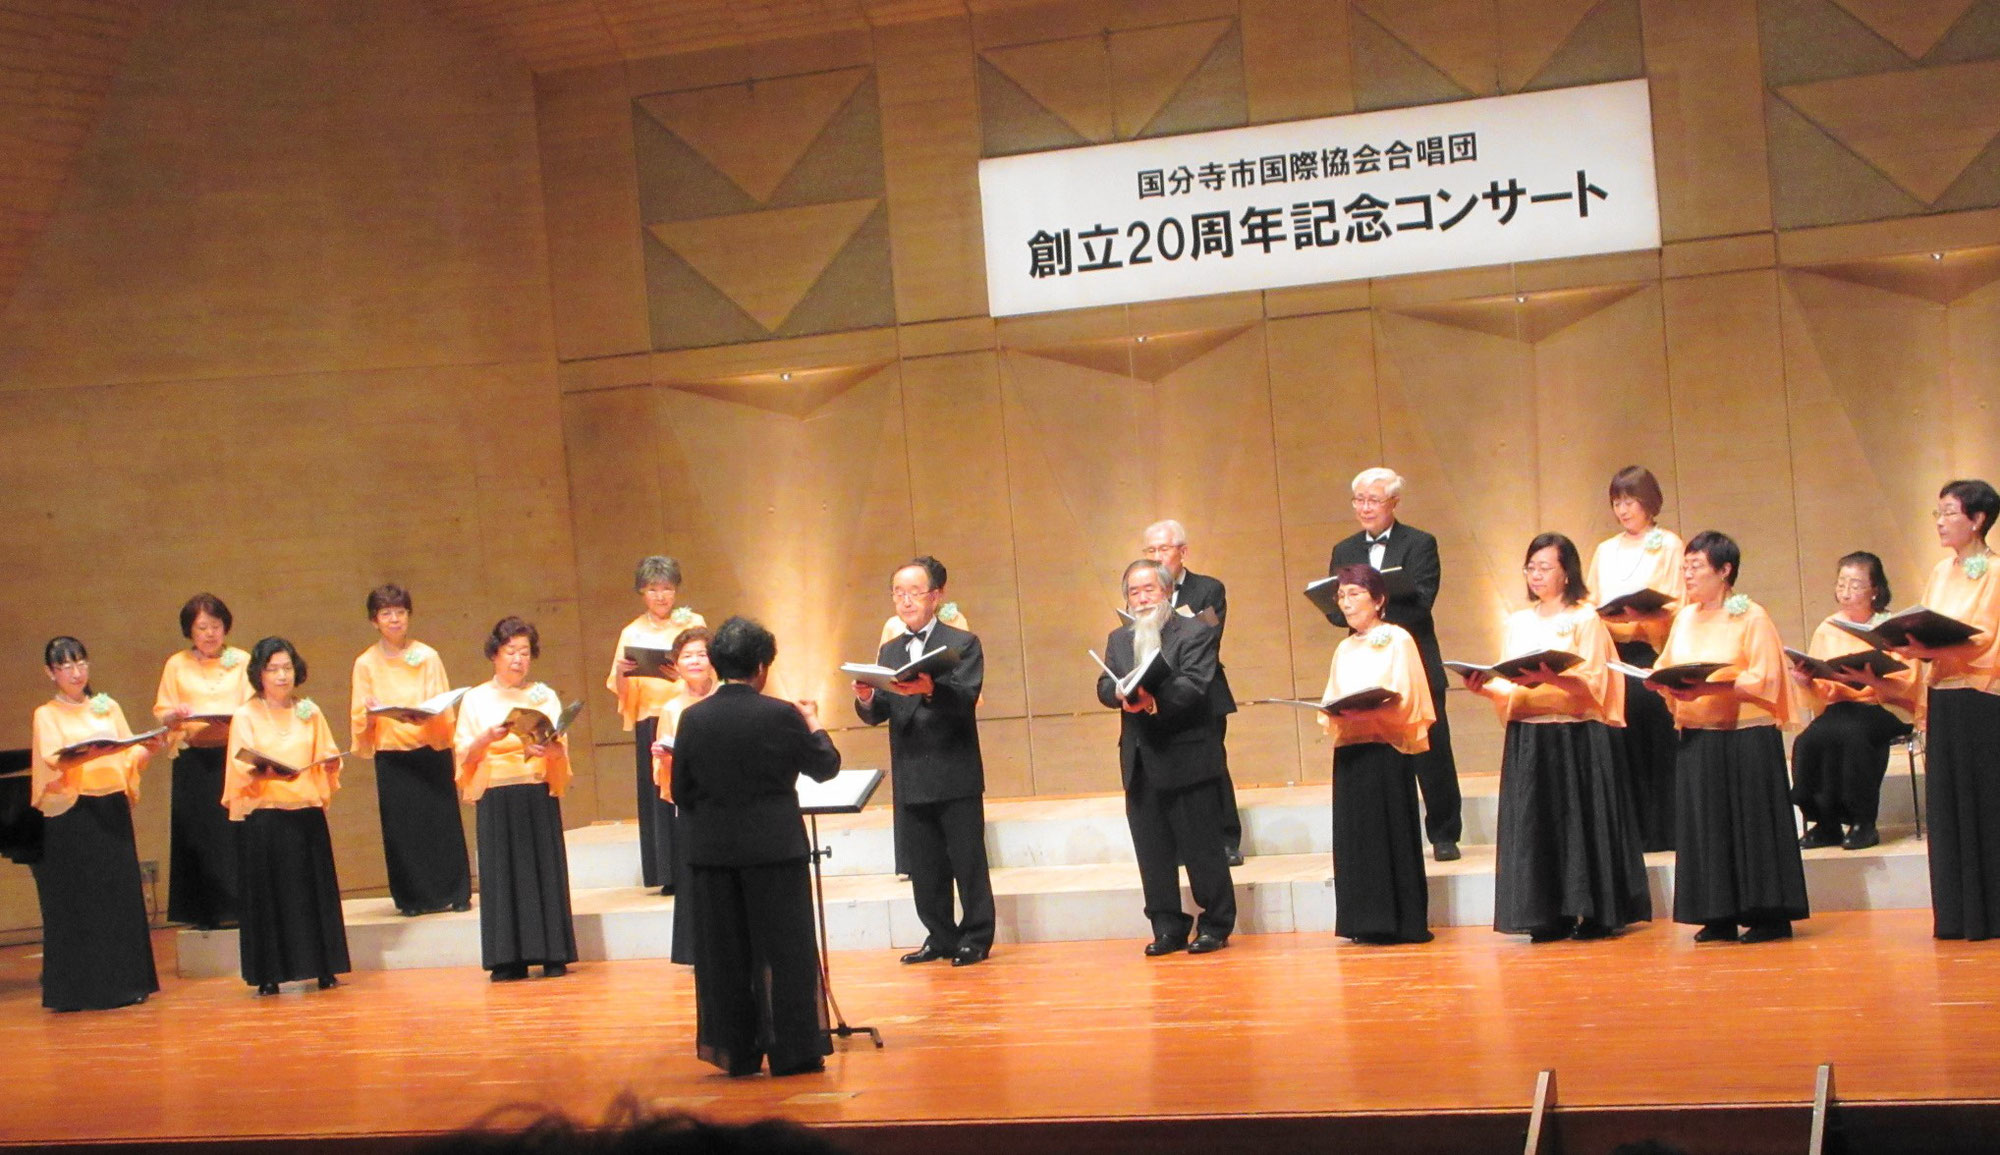 合唱団創立20周年記念コンサートが開催されました